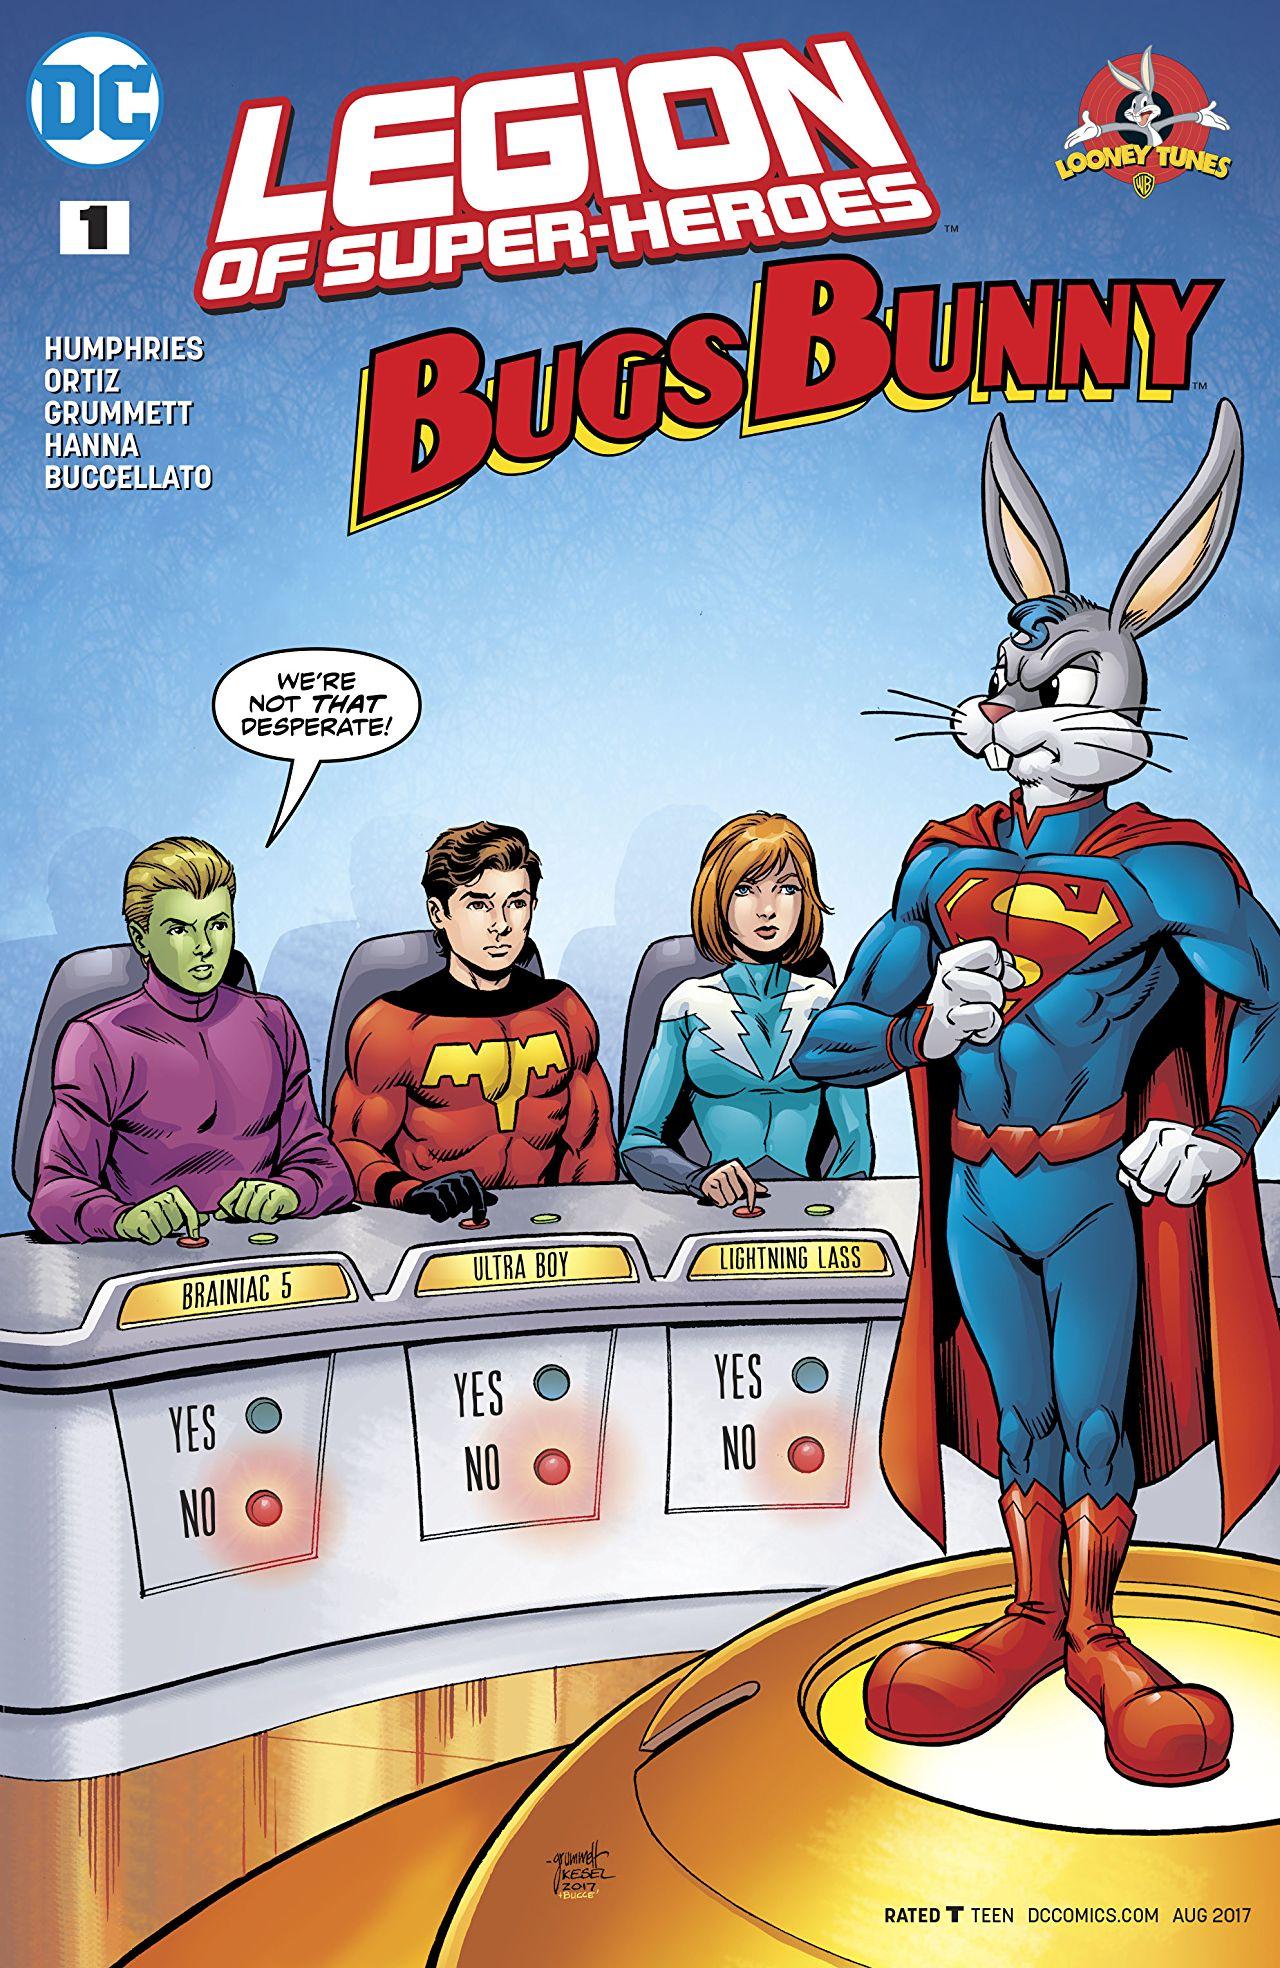 Legion of Super-Heroes/Bugs Bunny Special Vol. 1 #1